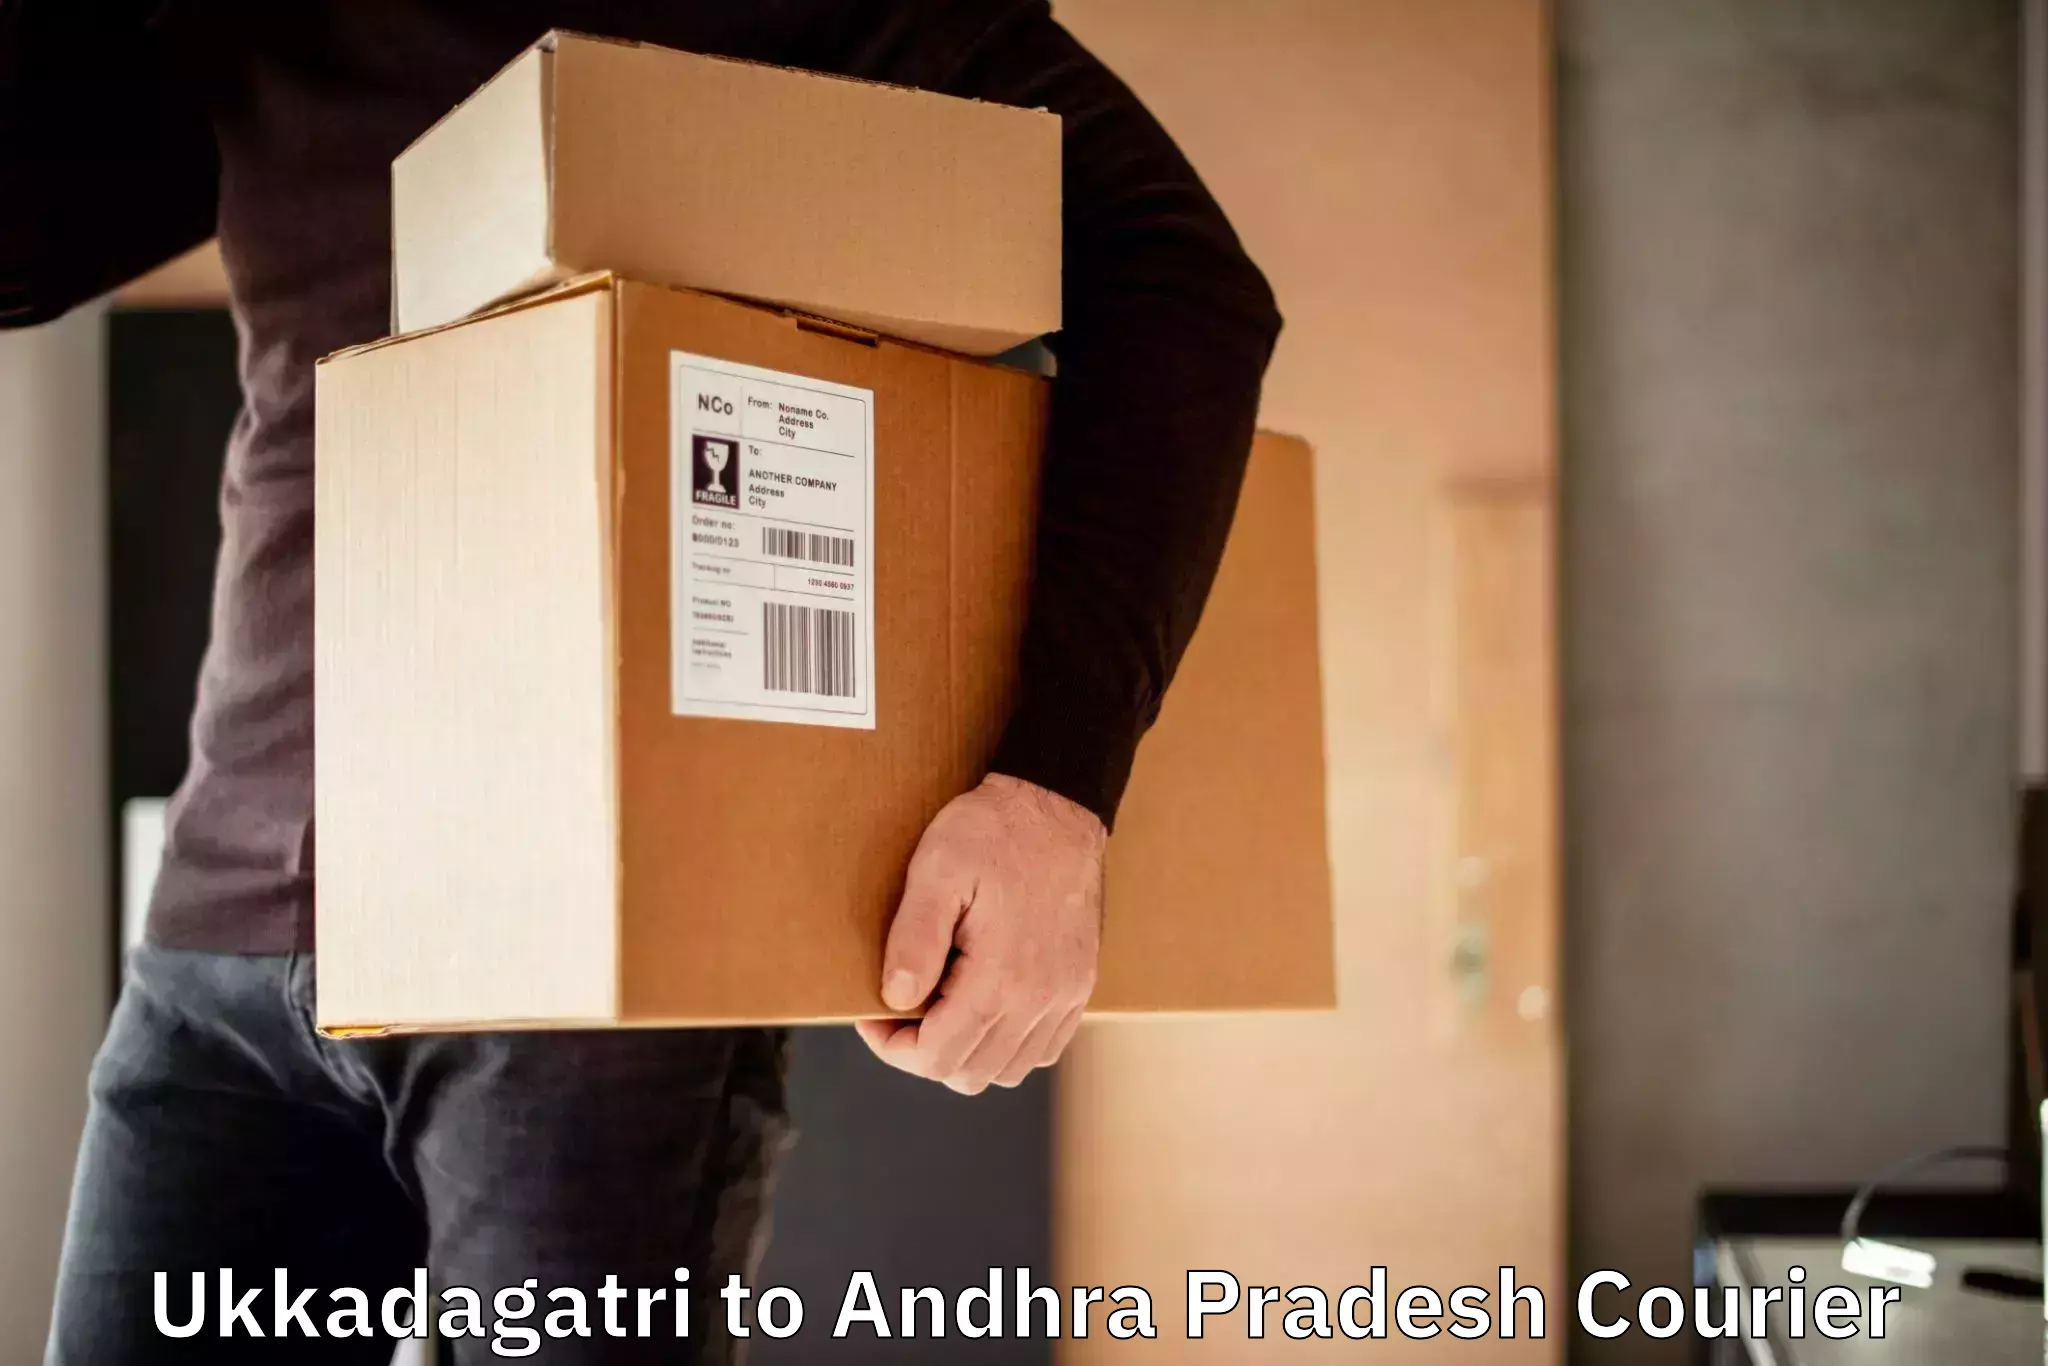 Next-generation courier services in Ukkadagatri to Guntakal